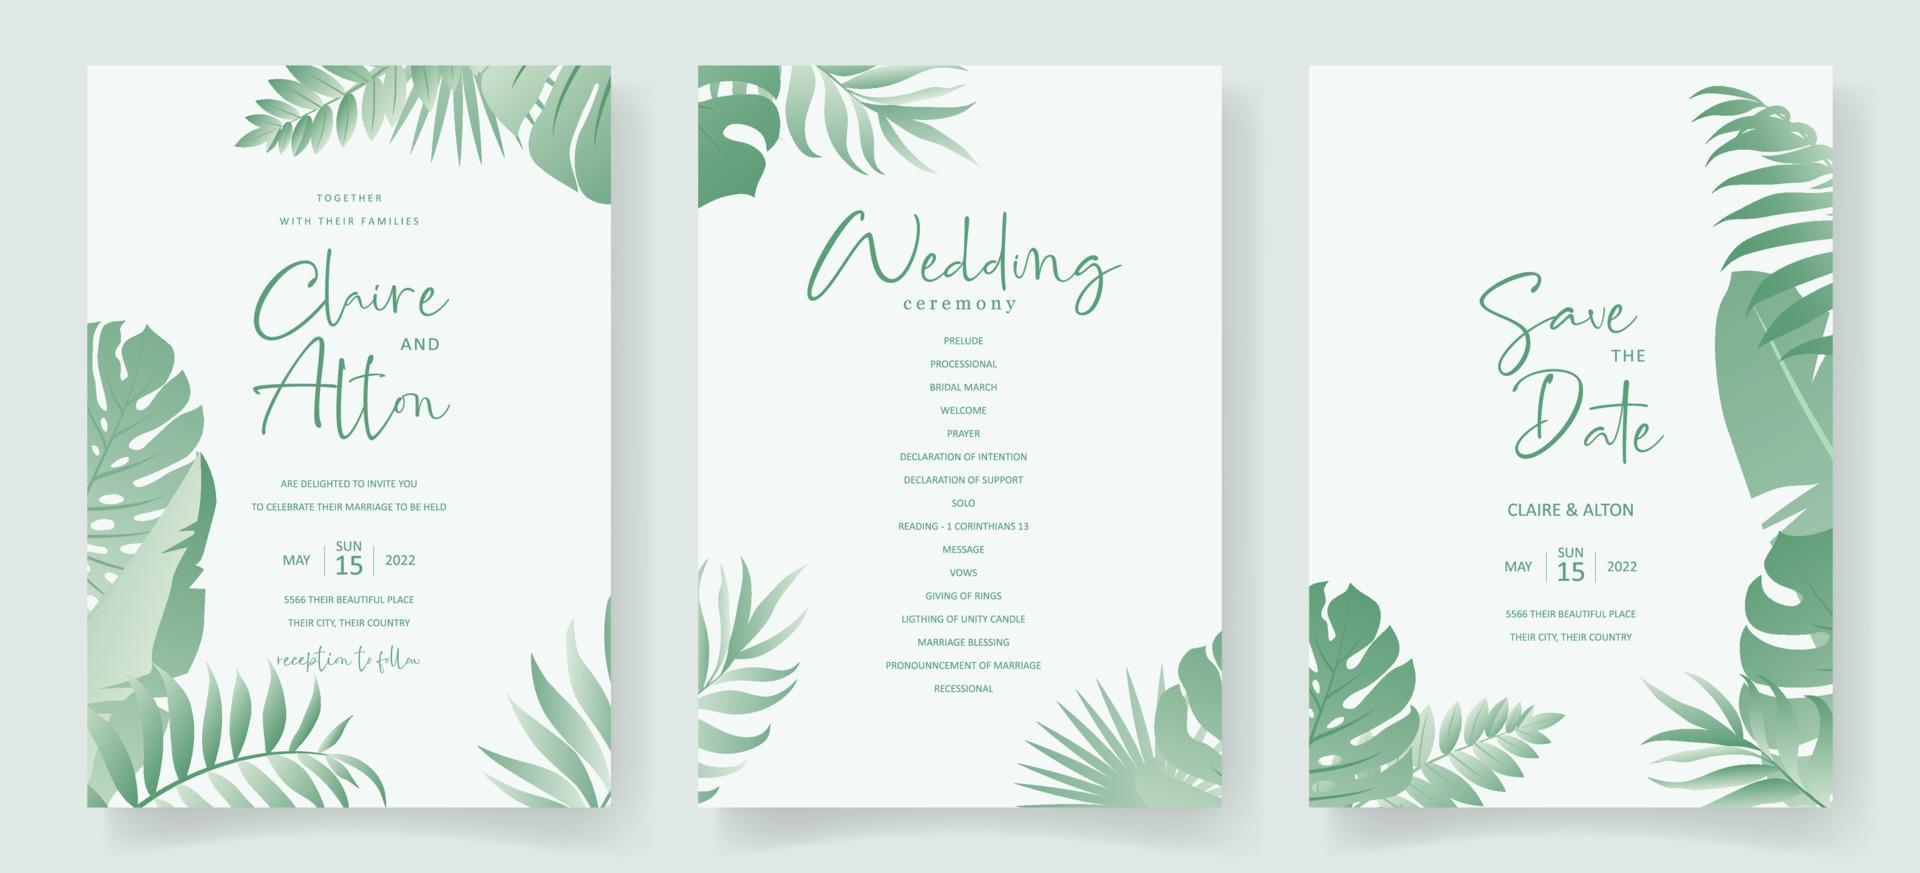 design de cartão de casamento de verão com enfeite de folha tropical vetor